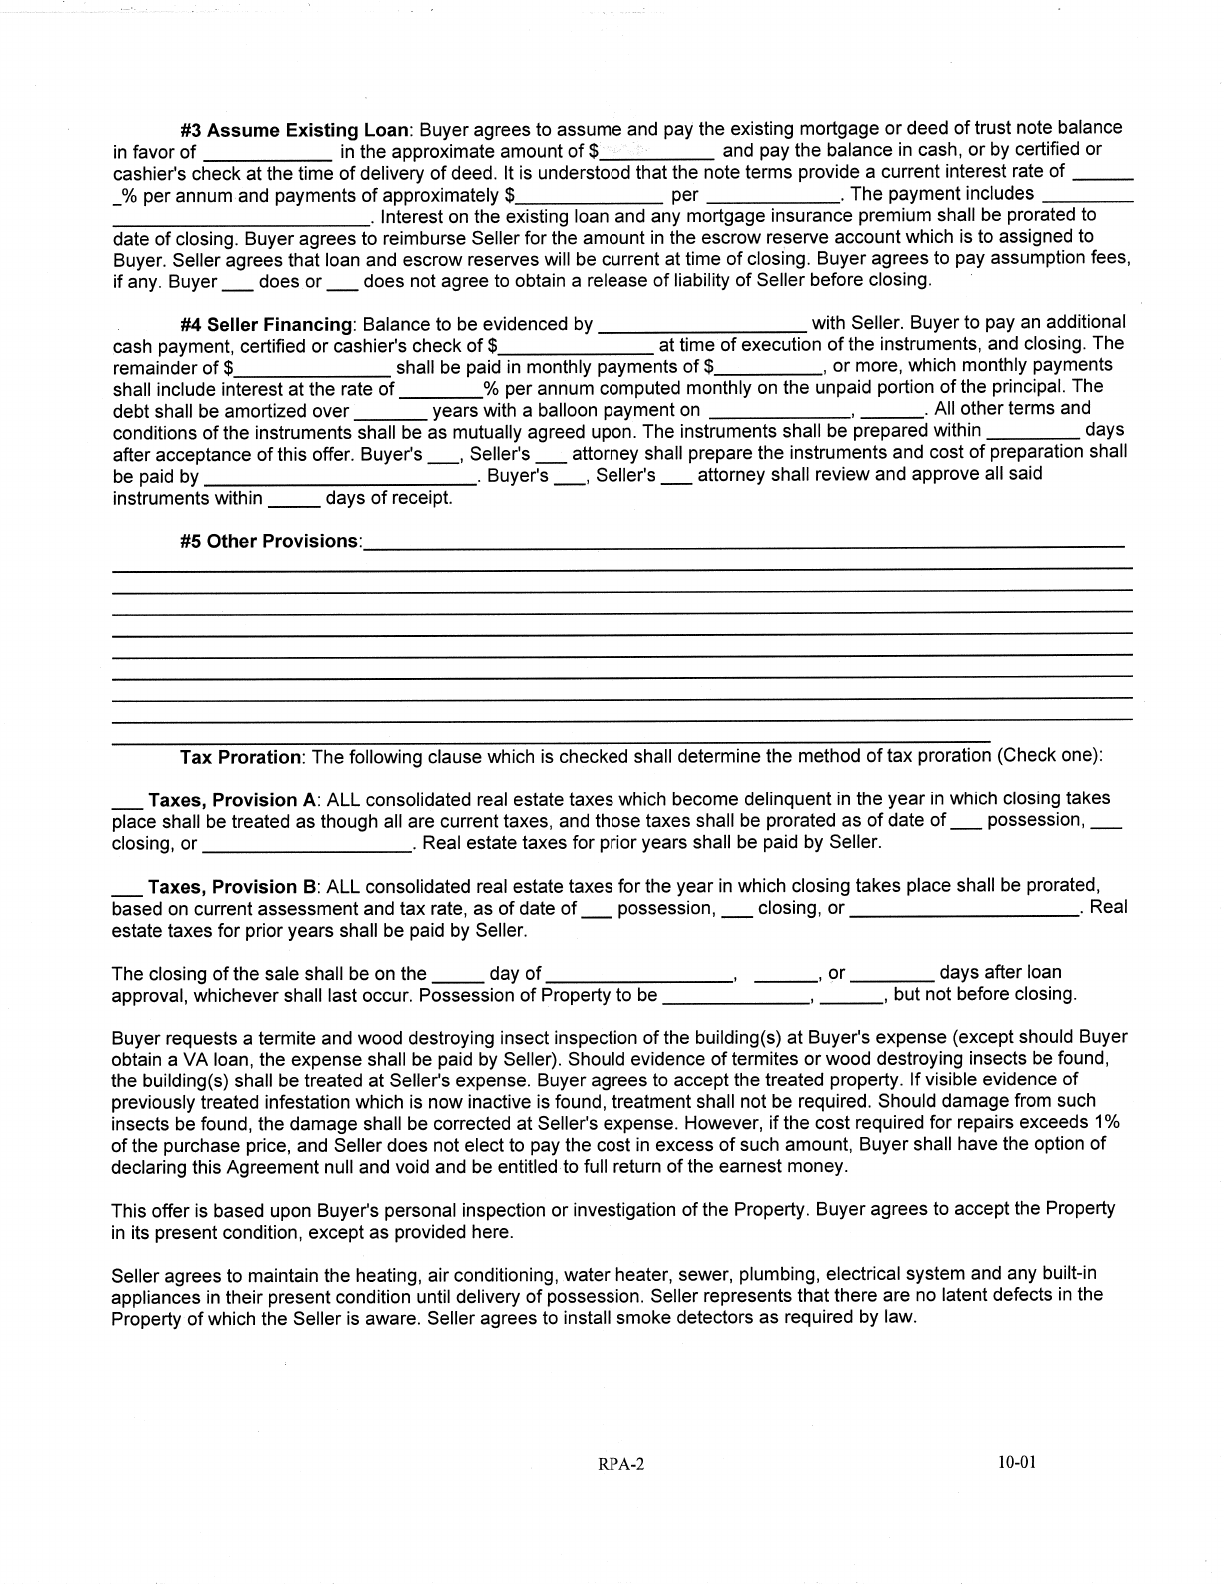 Nebraska Residential Purchase Agreement Form